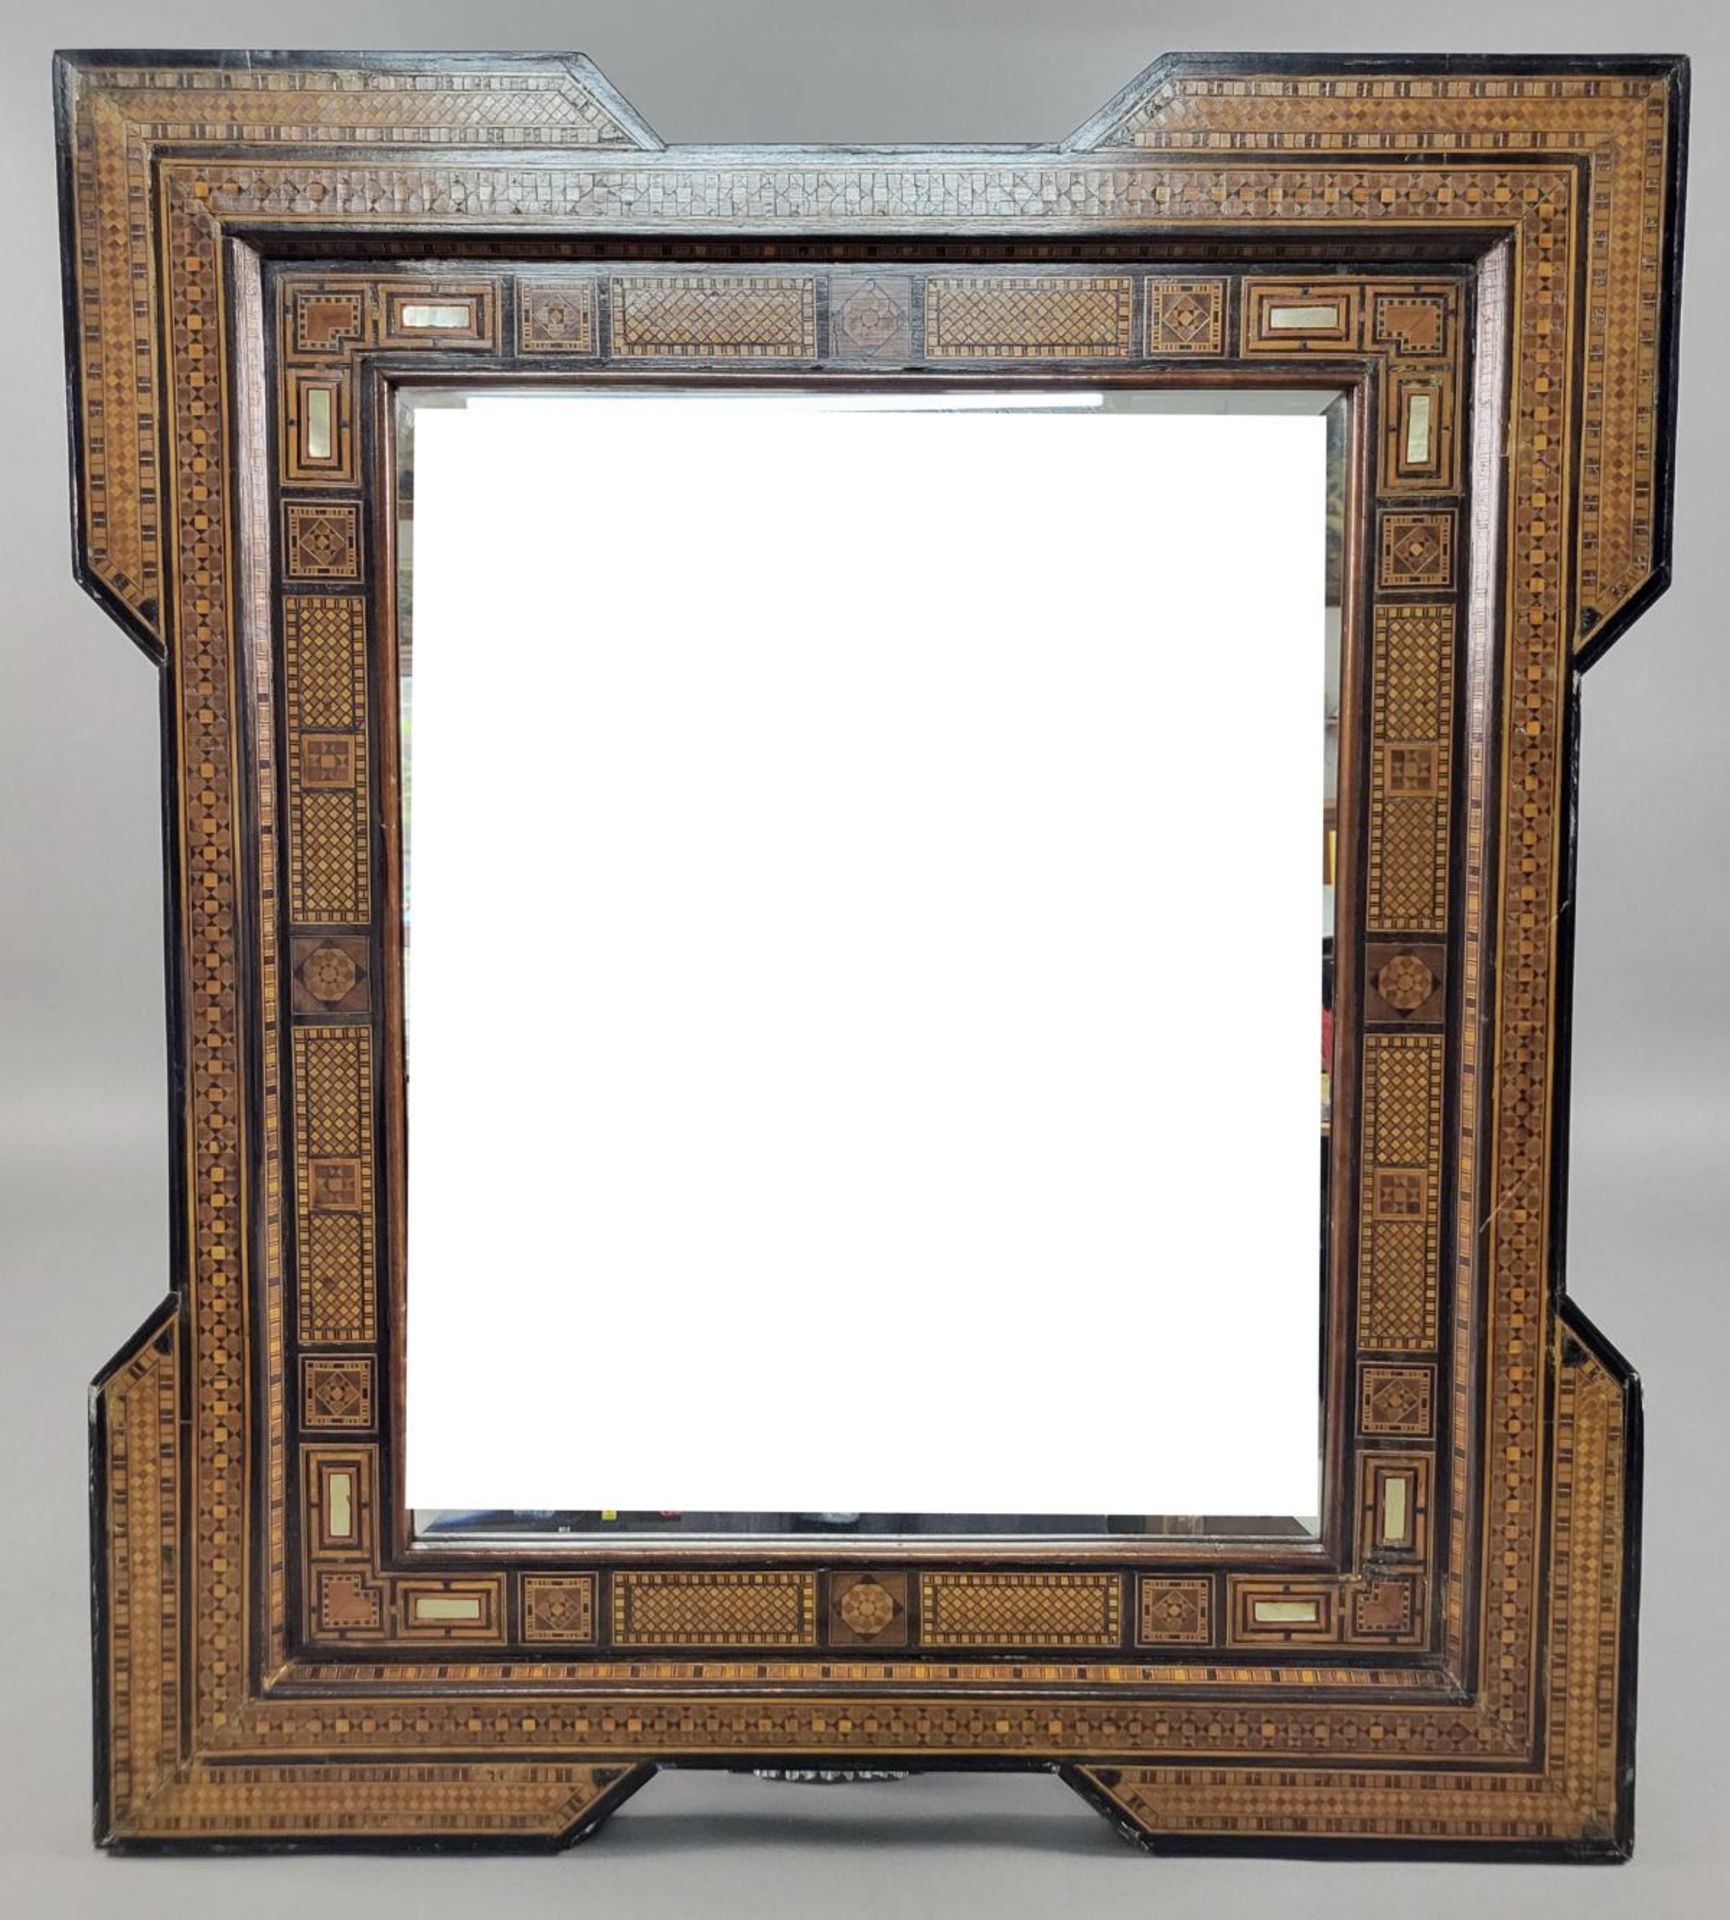 Rahmenspiegel im maurischen Stil, um 1900